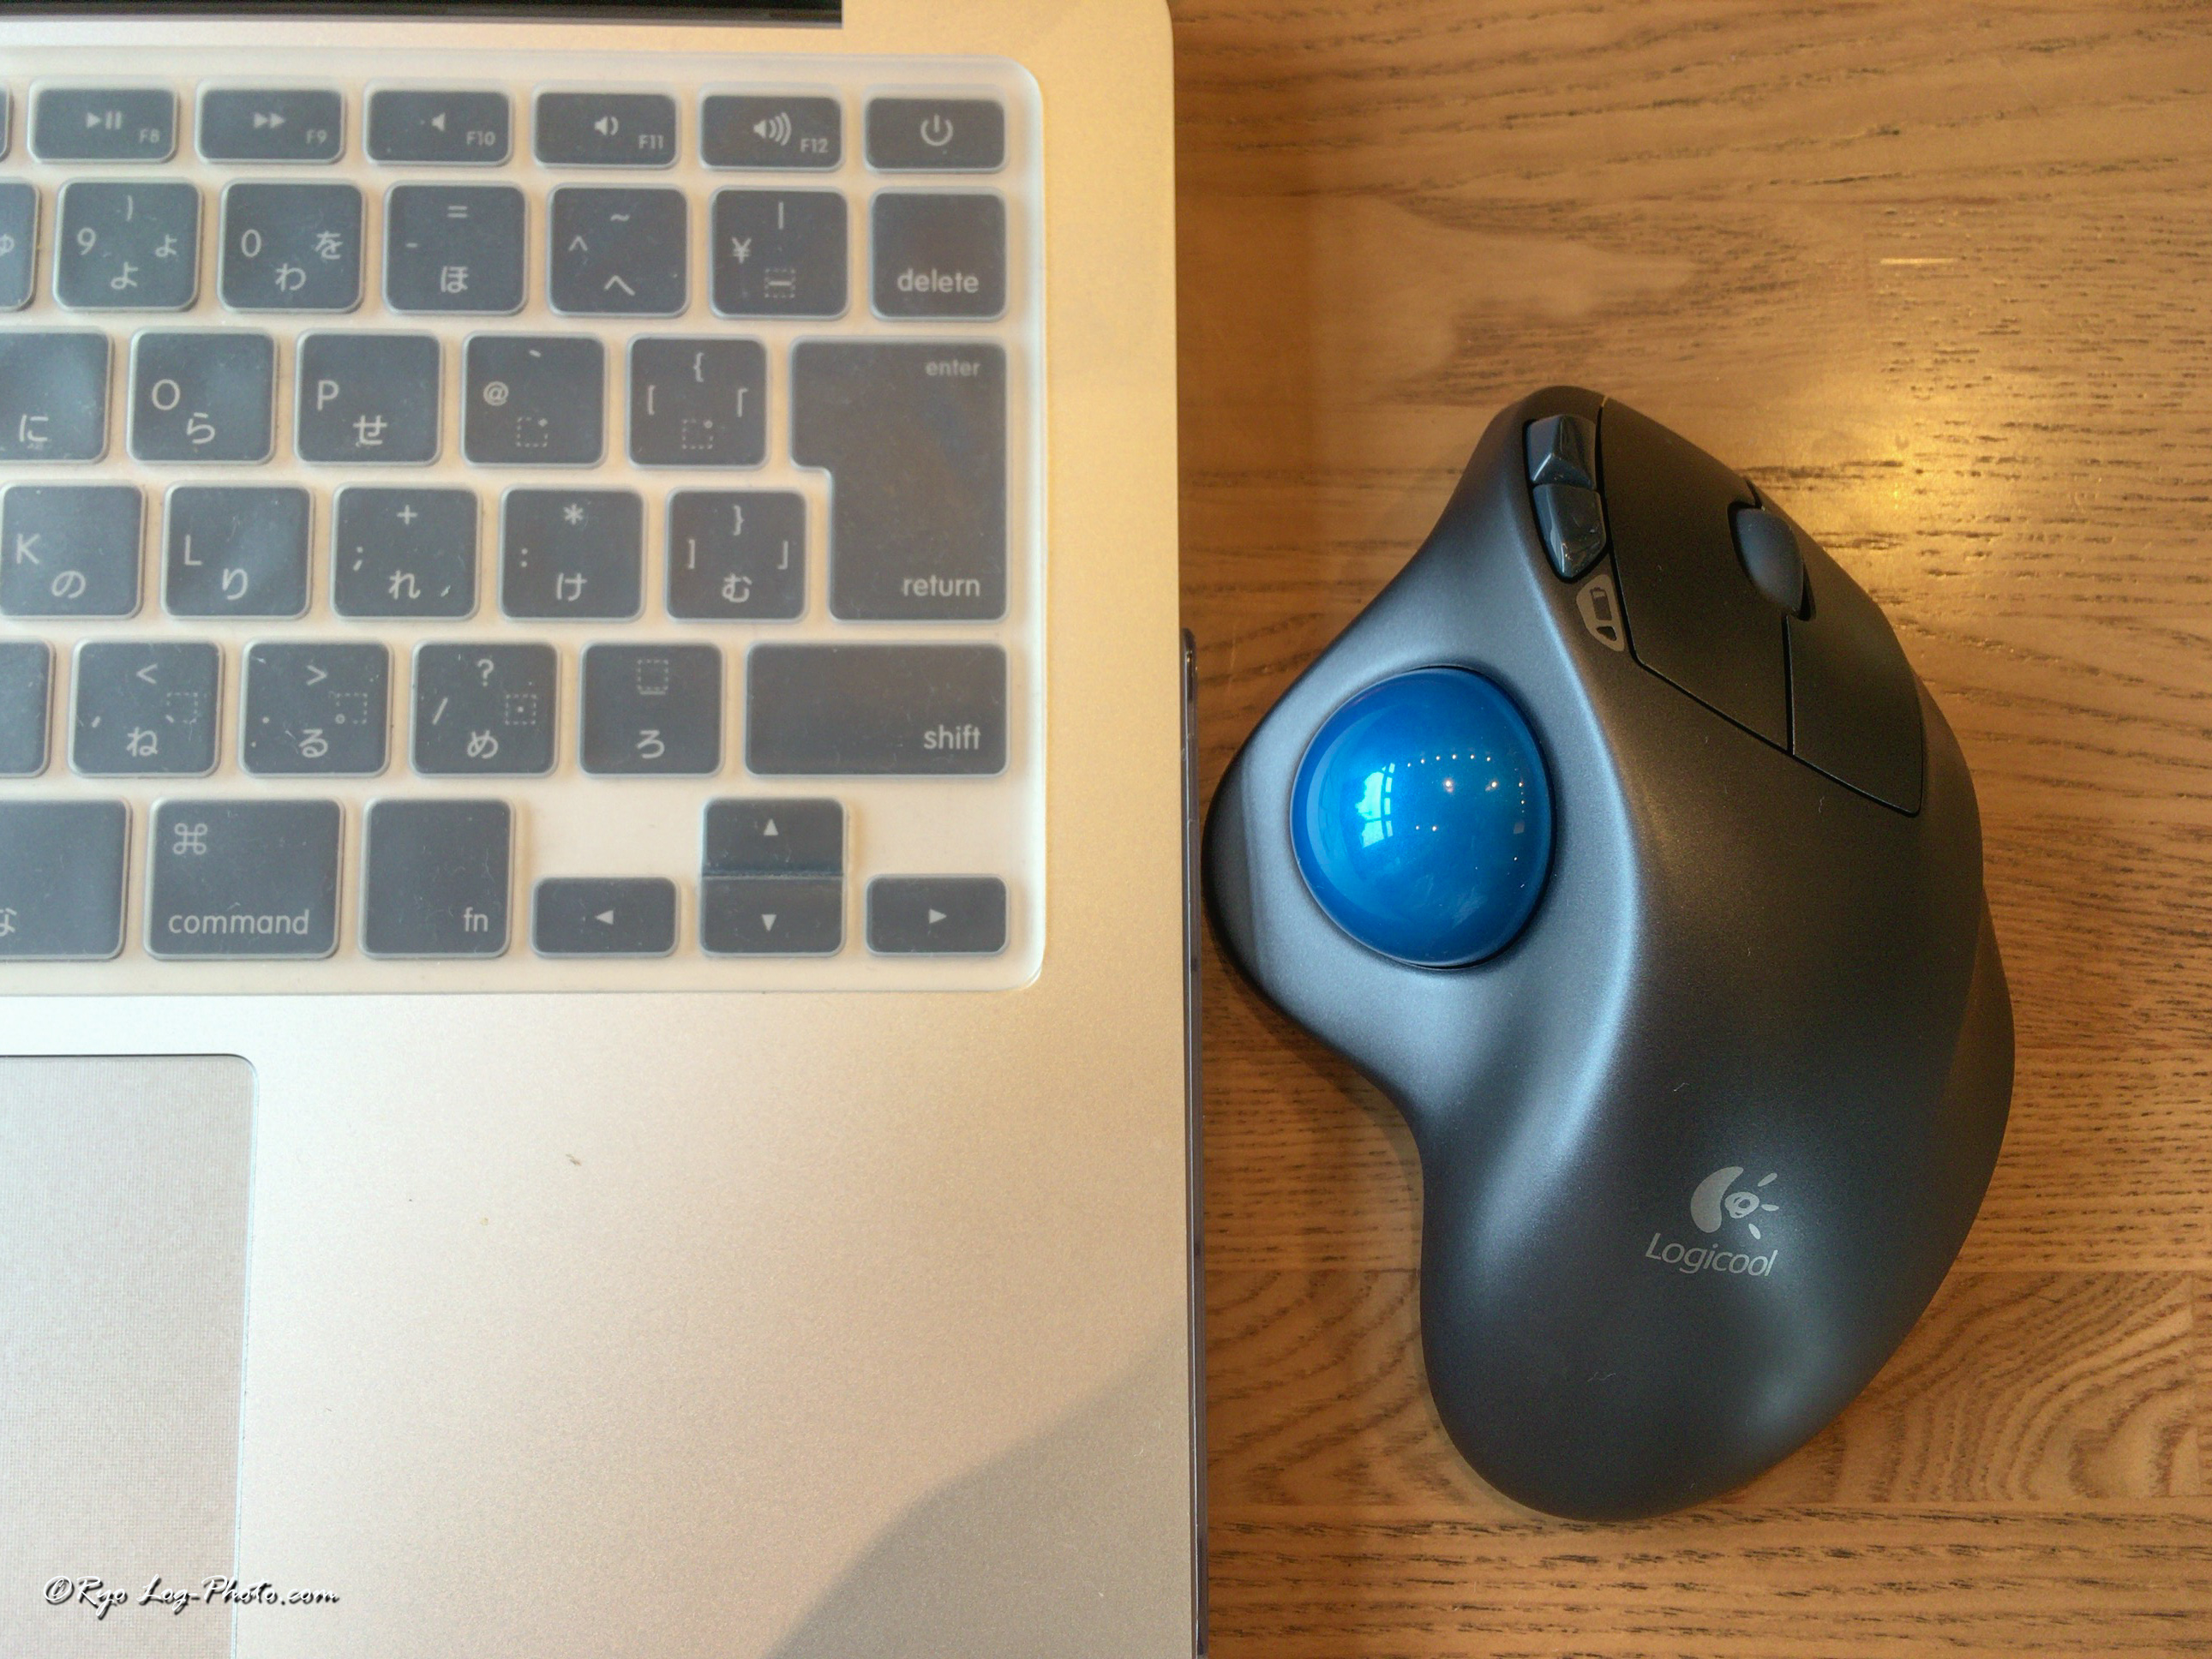 トラックボールはパソコン作業の効率をアップする マウスはもう使わない パソコン設定方法も記載 Log Photo